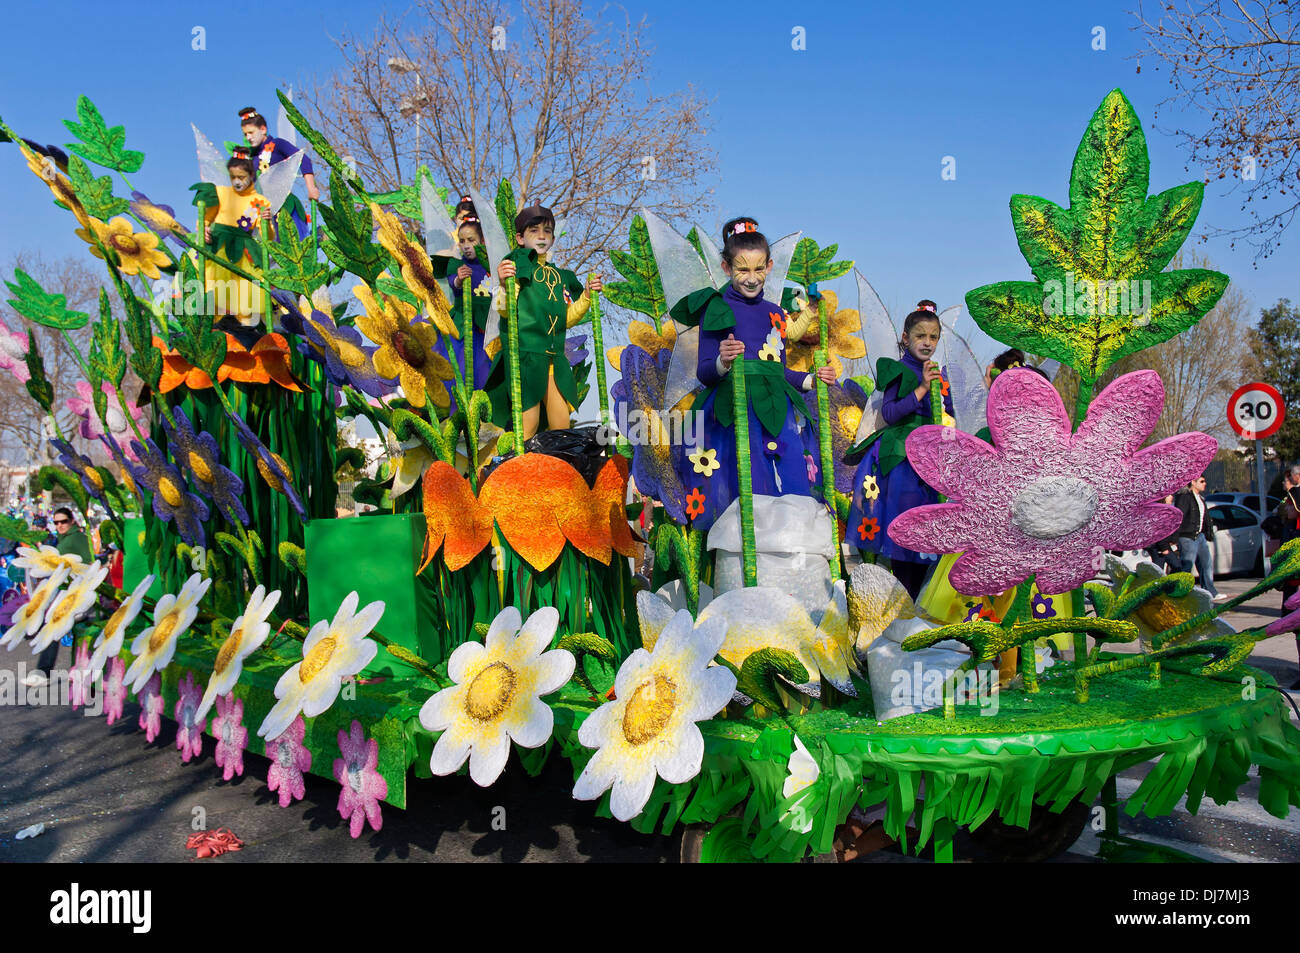 Flotteur carnaval, printemps allégorie, Isla Cristina, Huelva-province, région d'Andalousie, Espagne, Europe Banque D'Images